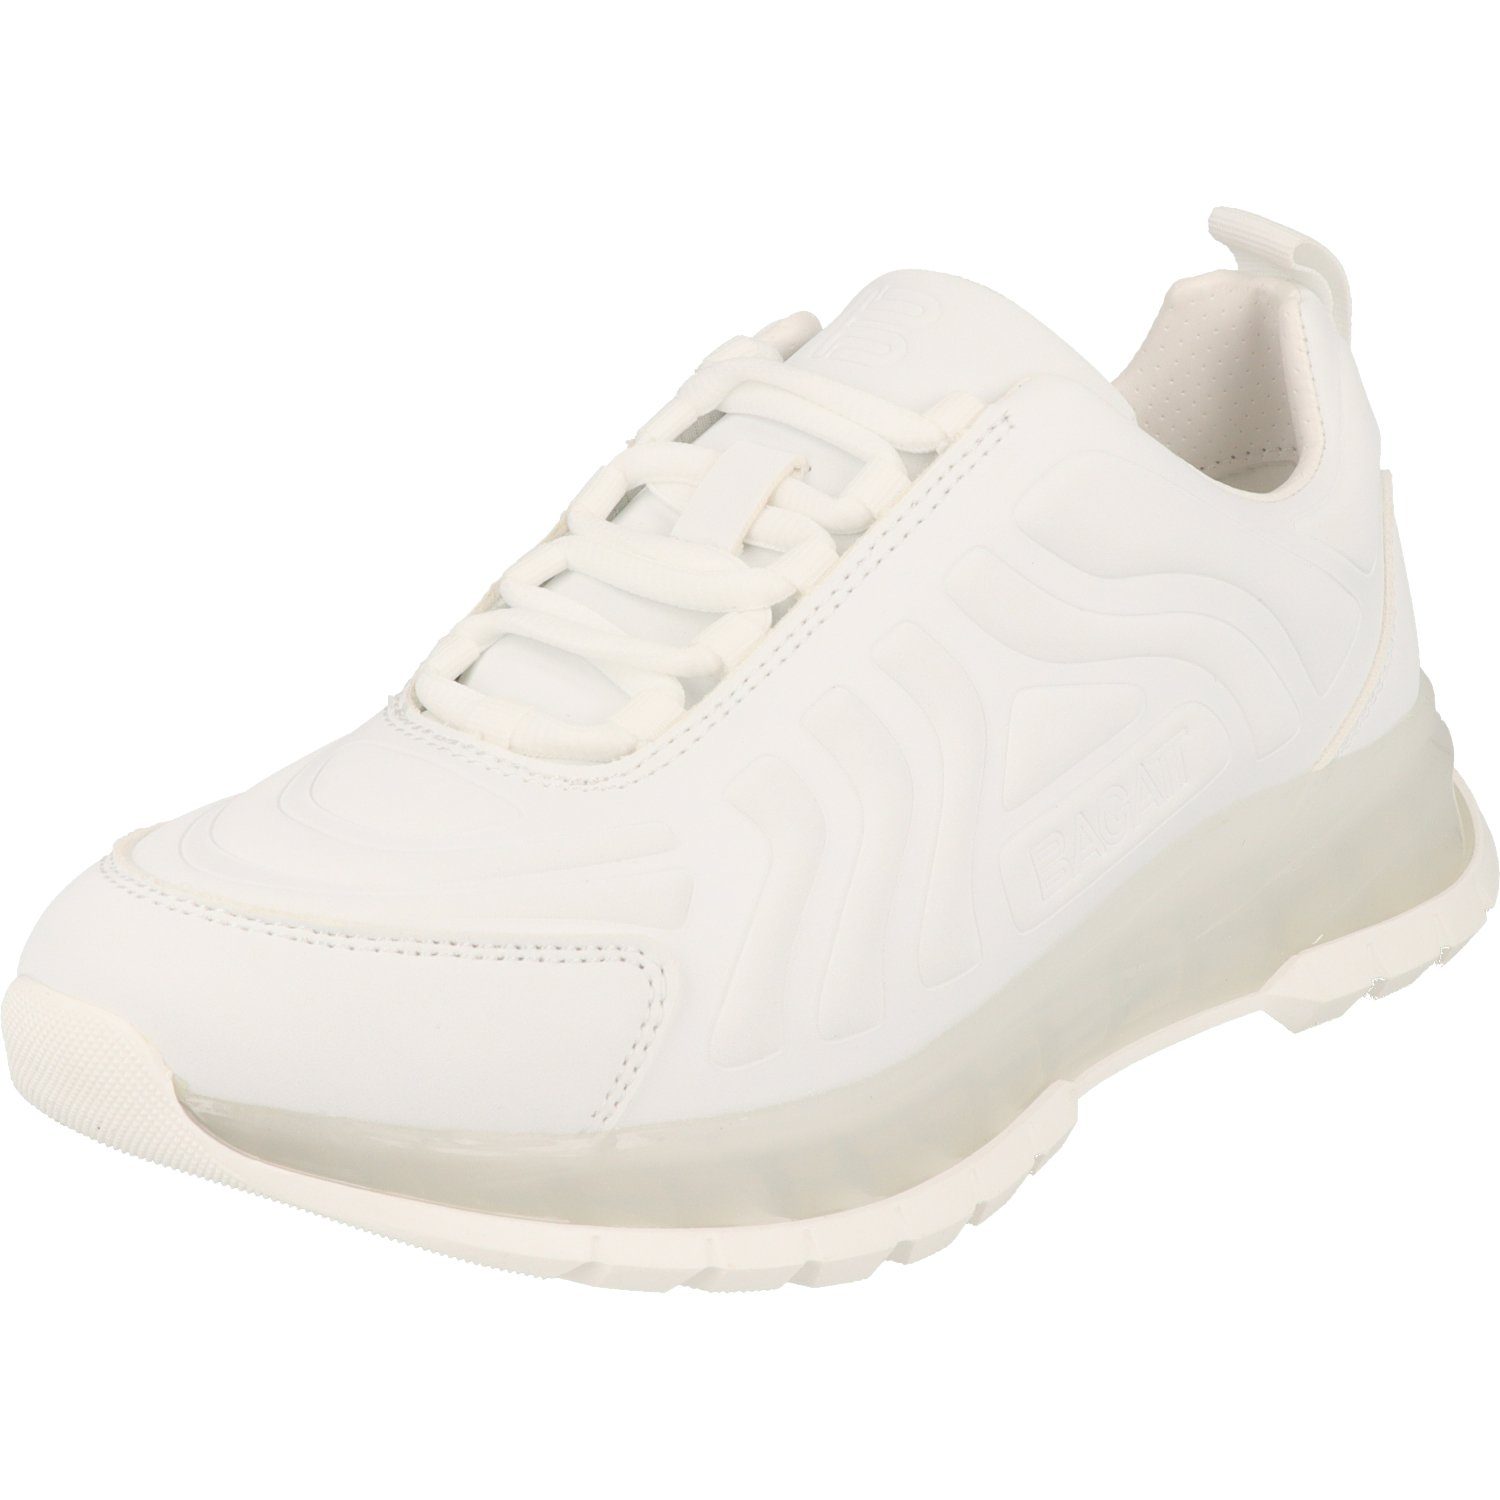 Athena Schuhe D31A7D115000 Schnürschuh Sneaker White Damen stylische Halbschuhe BAGATT